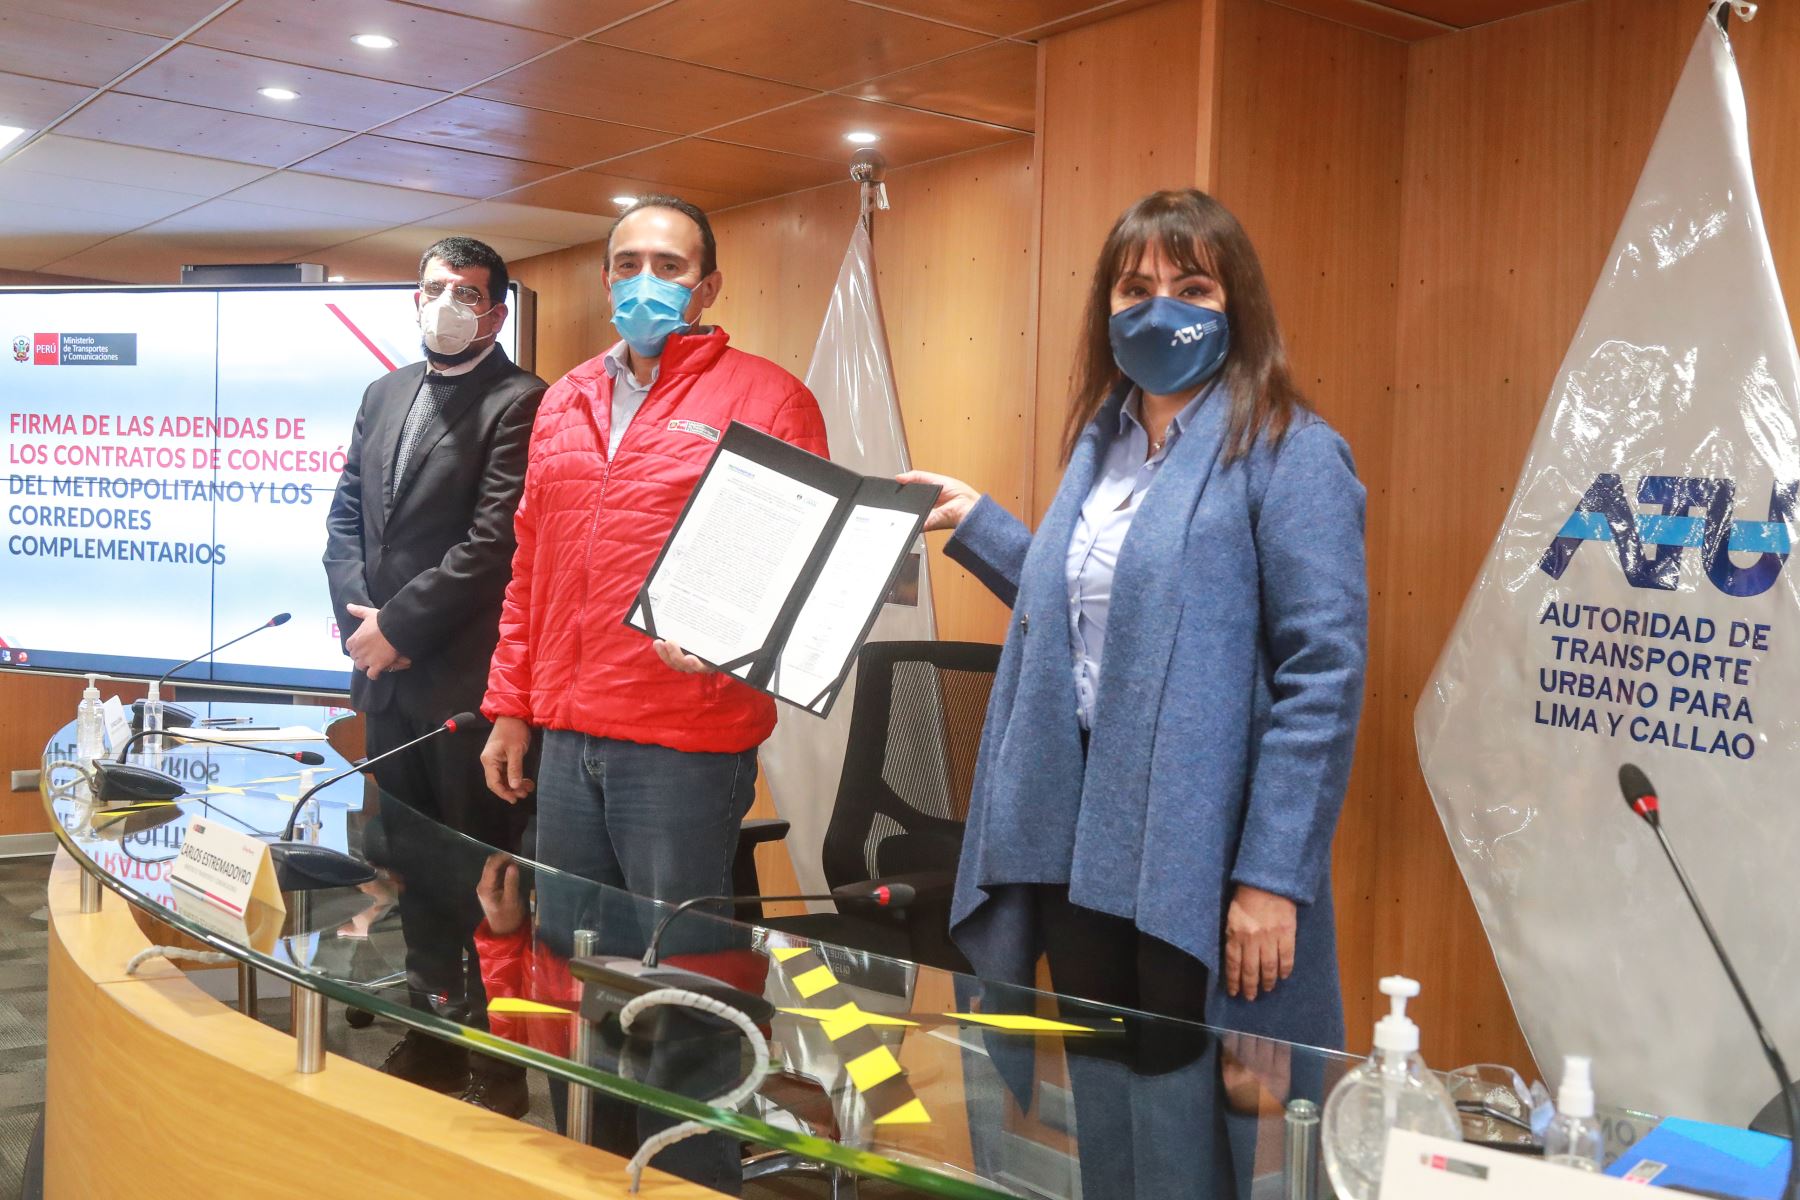 La ATU y representante de Protransporte firmaron adendas de cesión del Metropolitano y los corredores complementarios. Foto: ANDINA/MTC